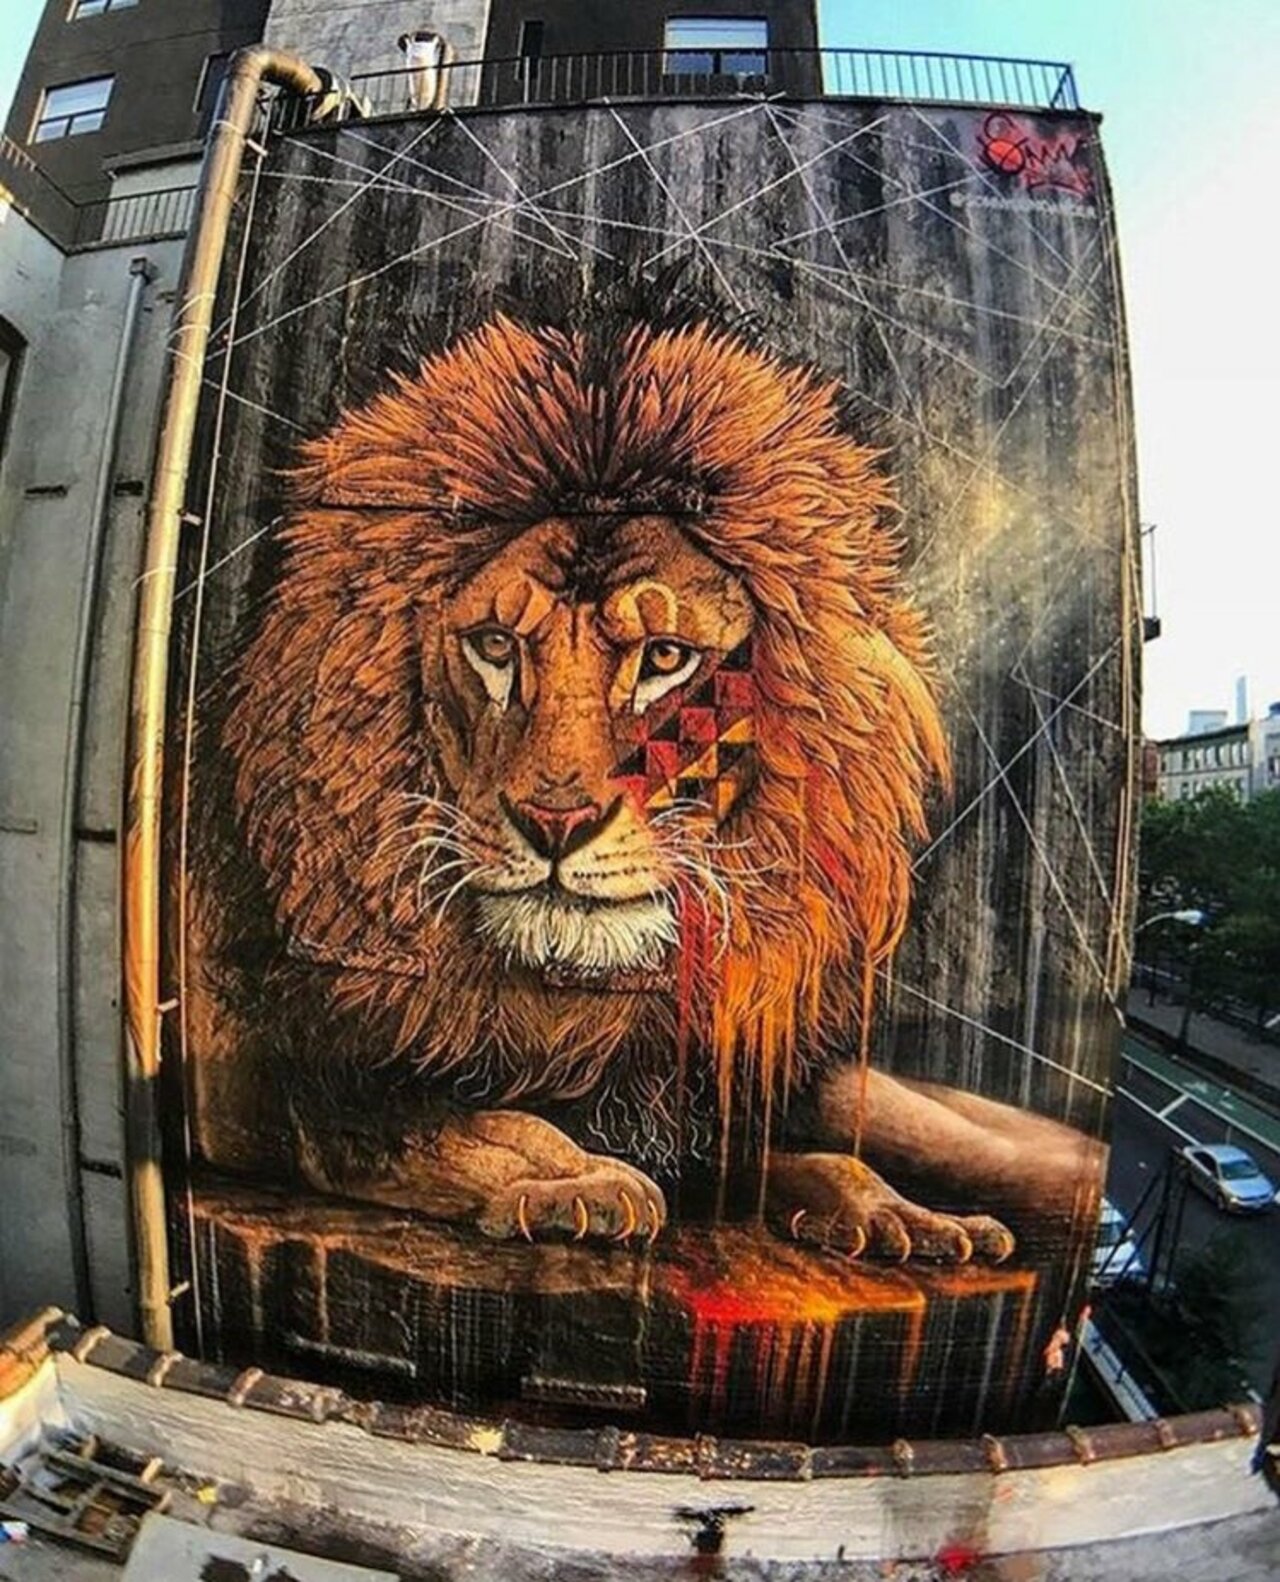 Amazing Street Art by sonnysundancer found in New York#StreetArt #muralart #graffiti #art #artists #LoveTwitter https://t.co/Km5xFZg9XV